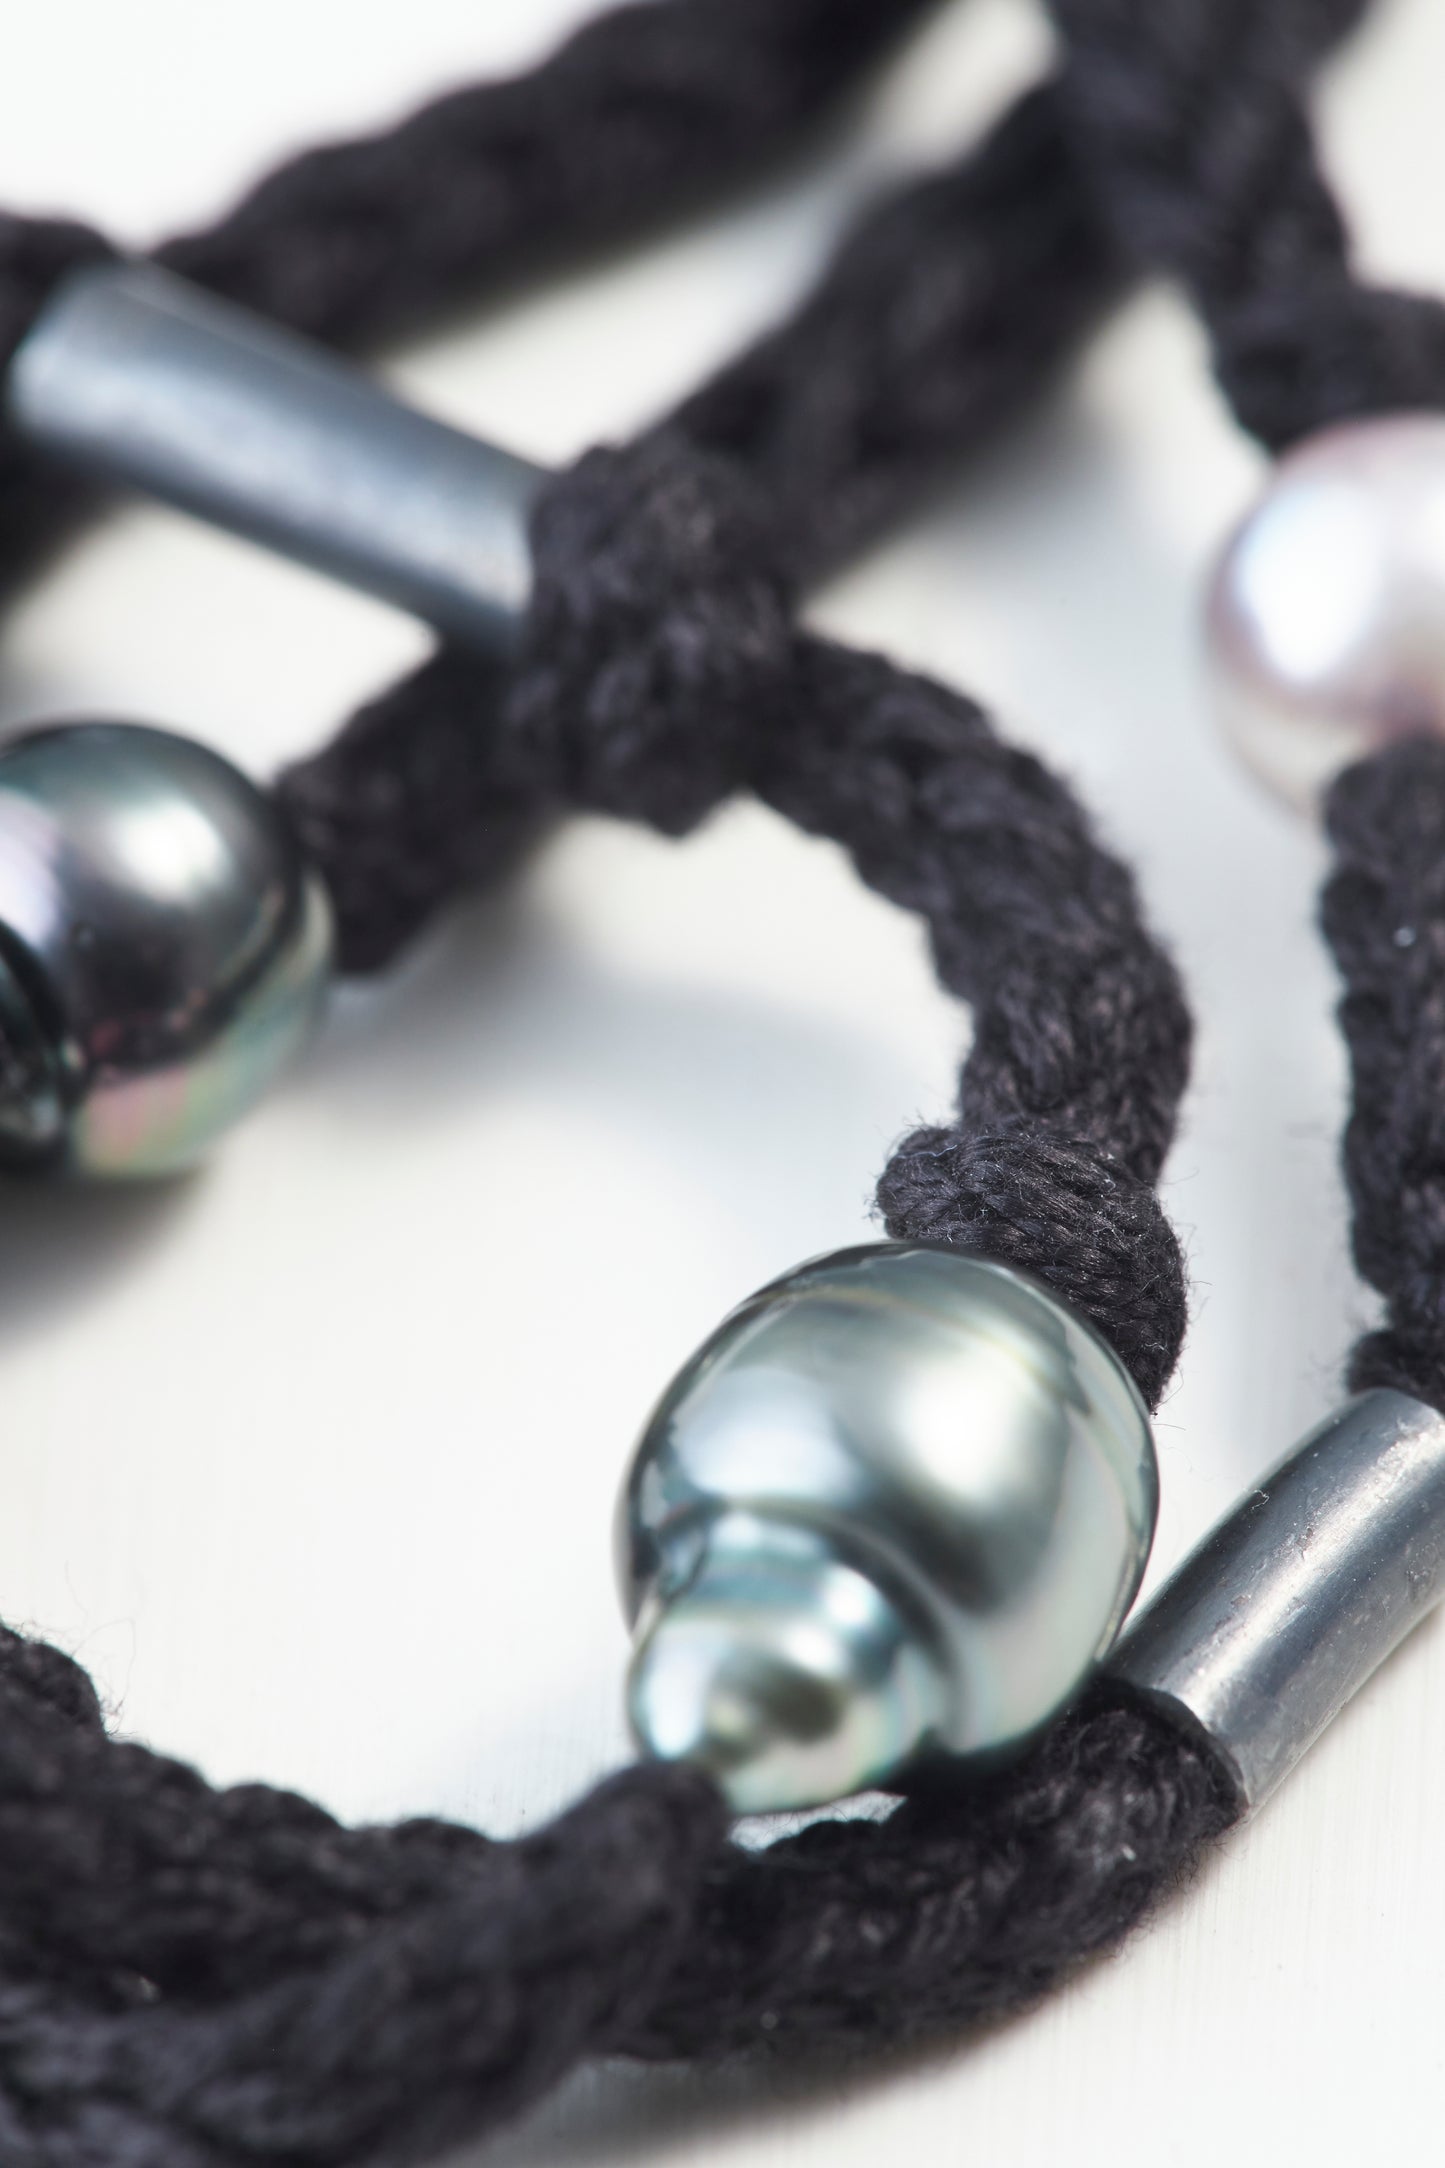 Cotton code Necklace Black 60cm